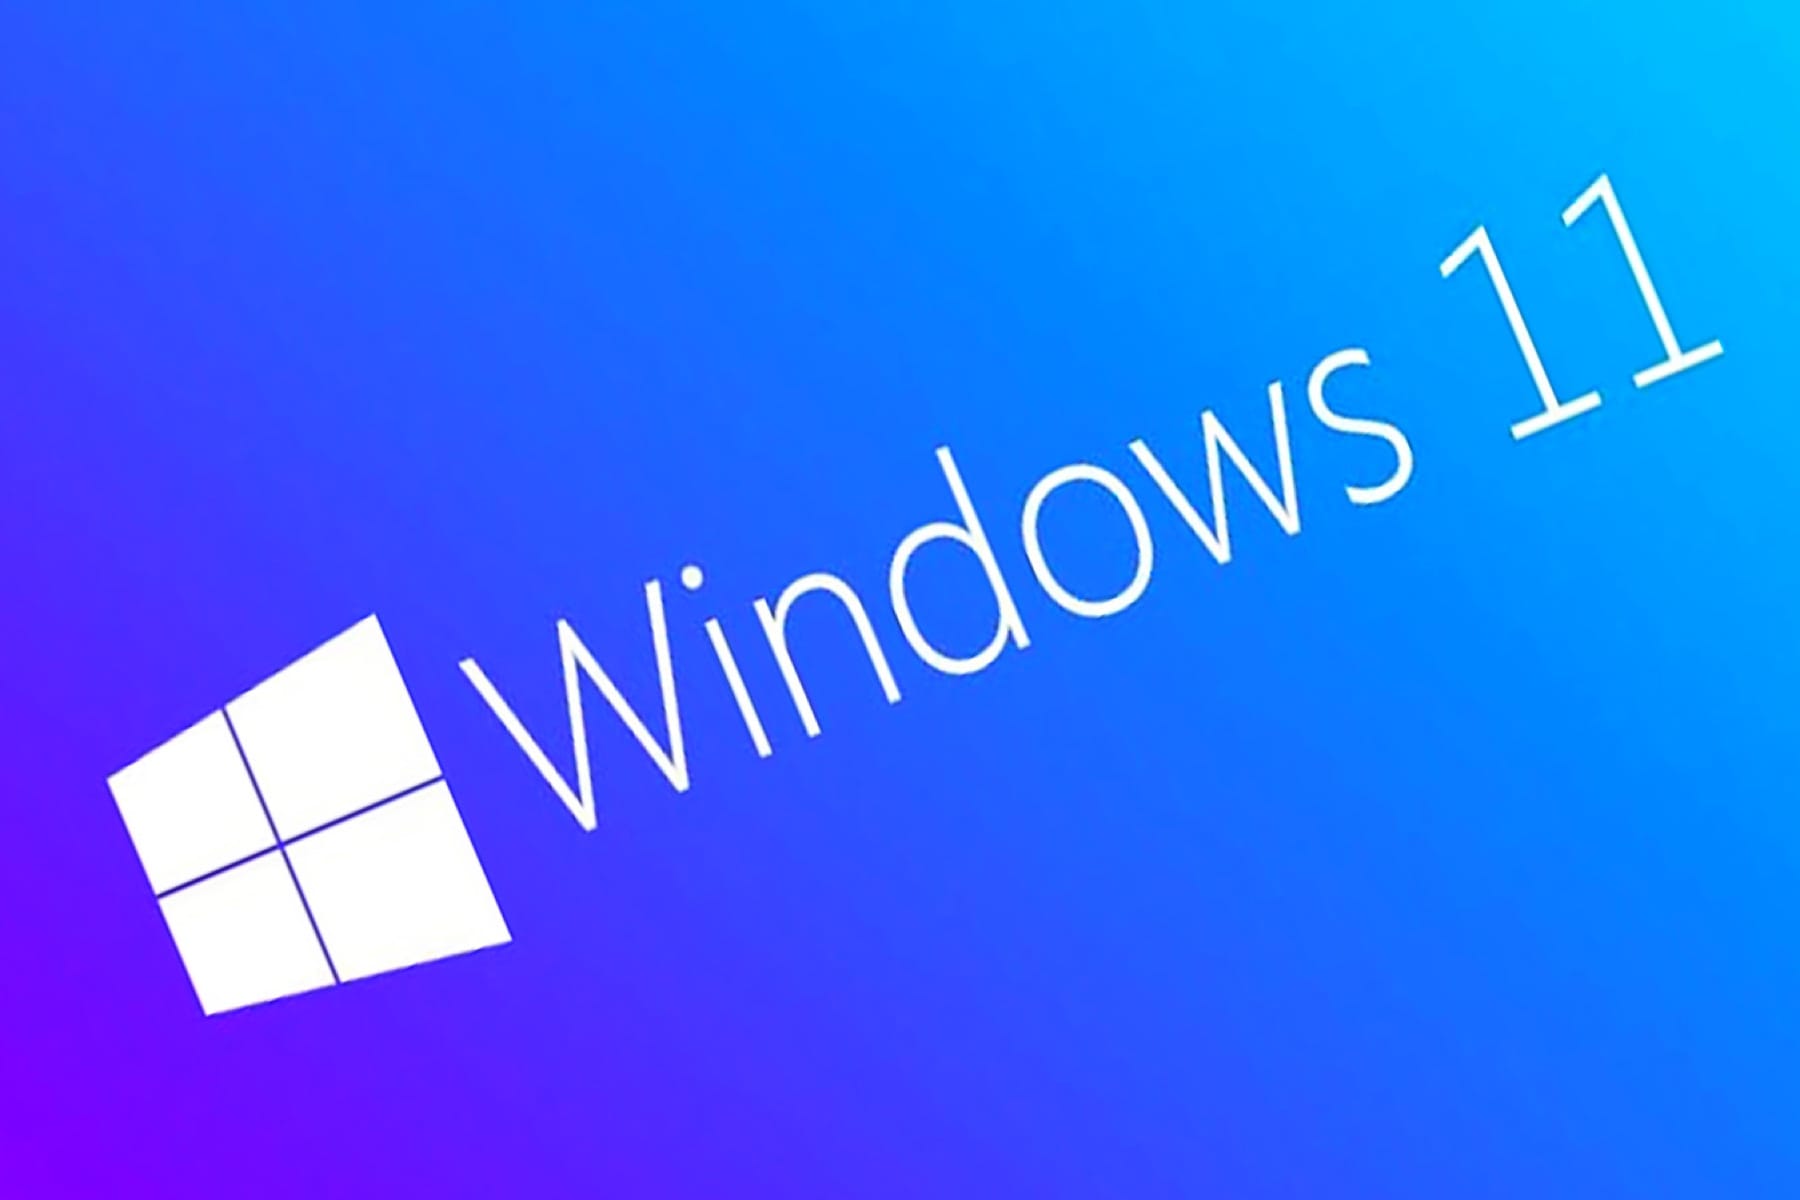 Oto Windows 11 SE. Słowem, Microsoft przygotowuje więcej nowości